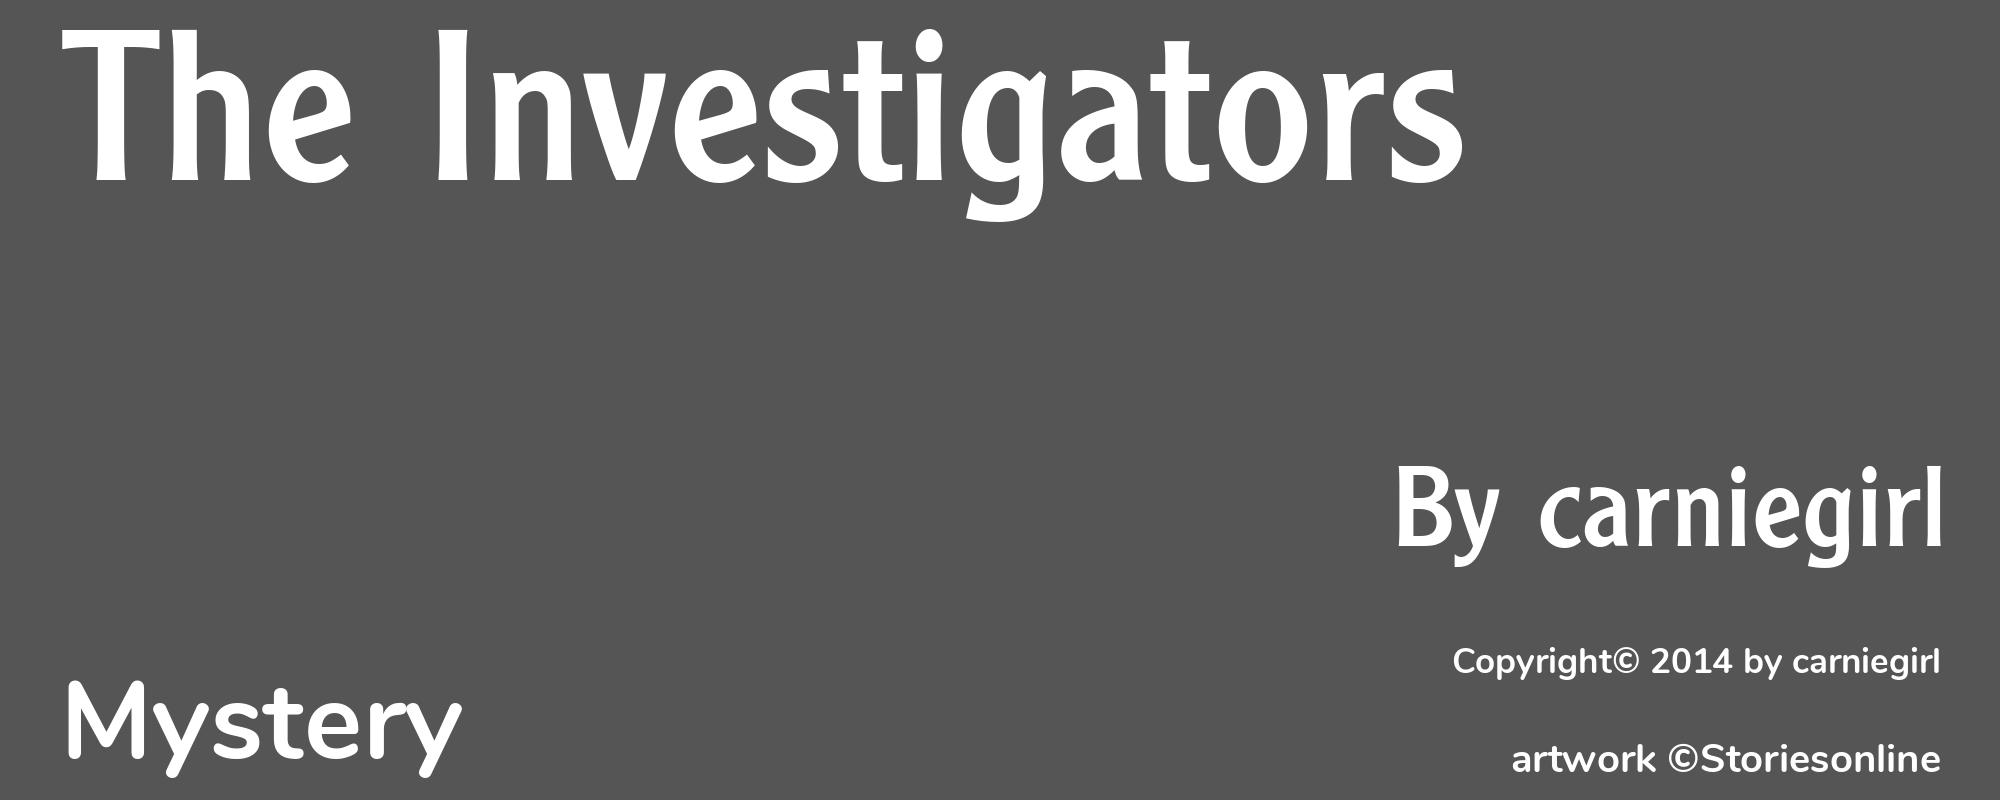 The Investigators - Cover